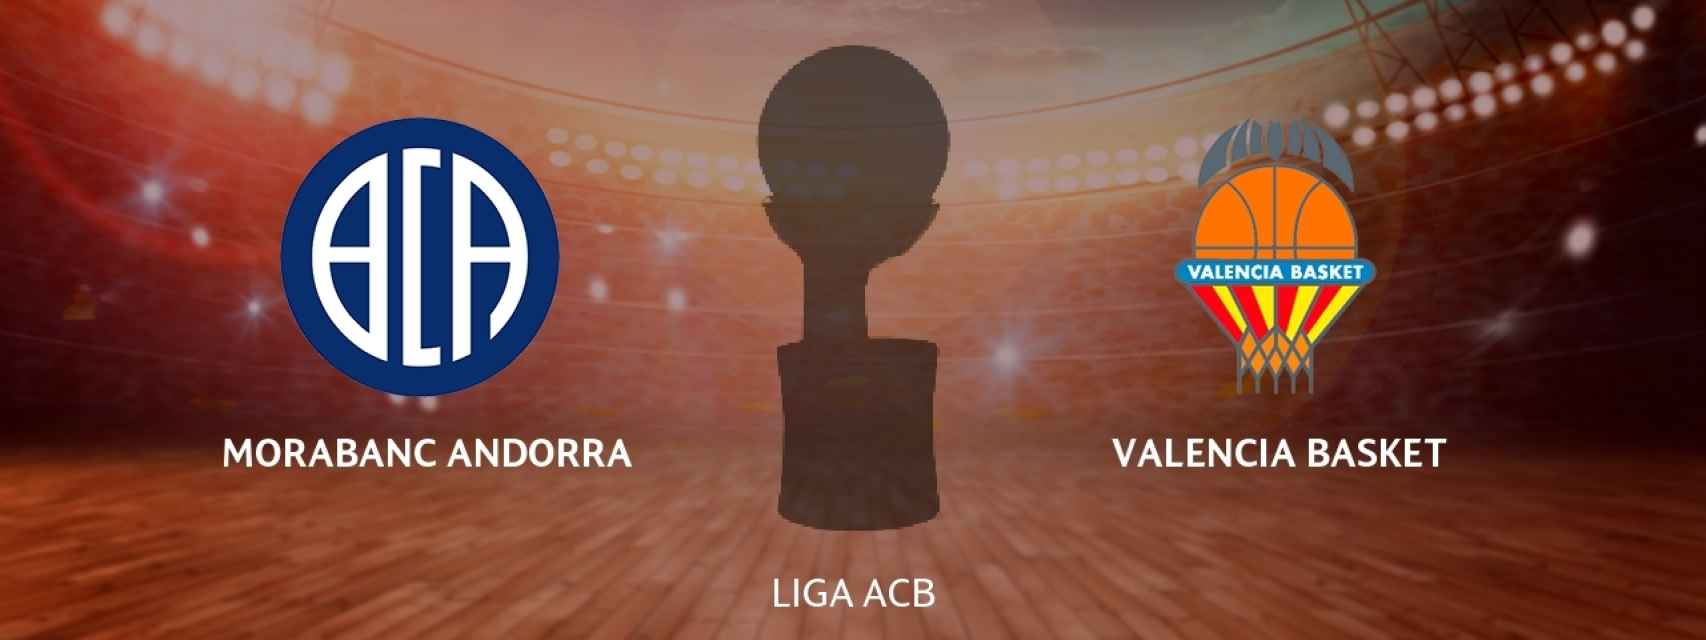 Morabanc Andorra - Valencia Basket